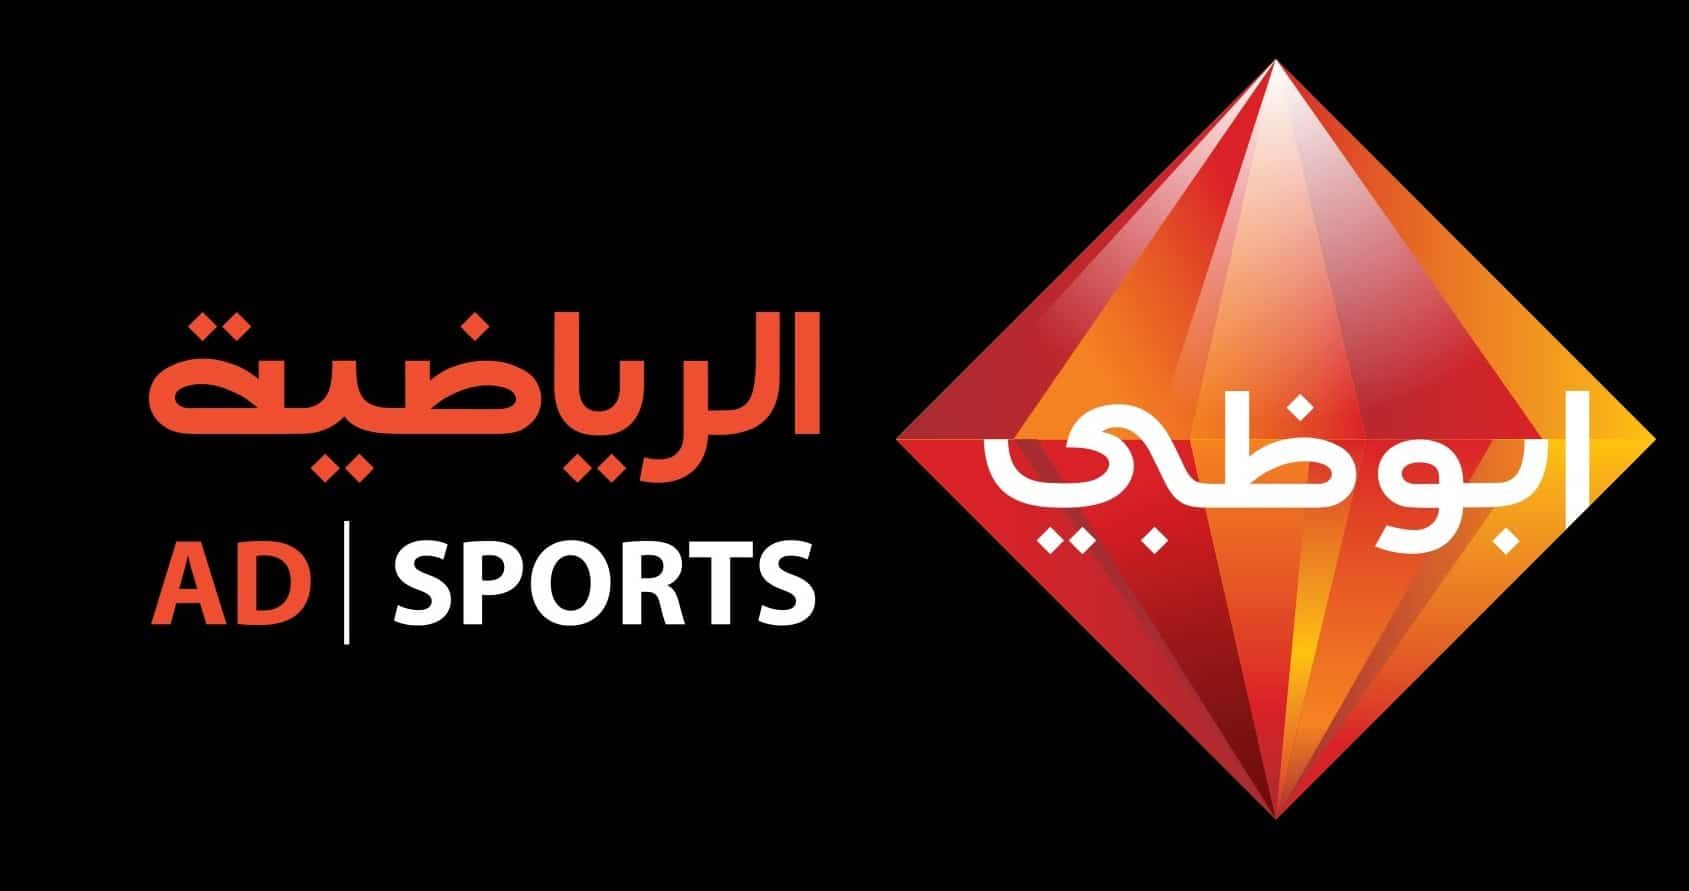 اضبط تردد قناة أبو ظبي الرياضية ABU DHABI الجديد على النايل سات وعرب وهوت بيرت